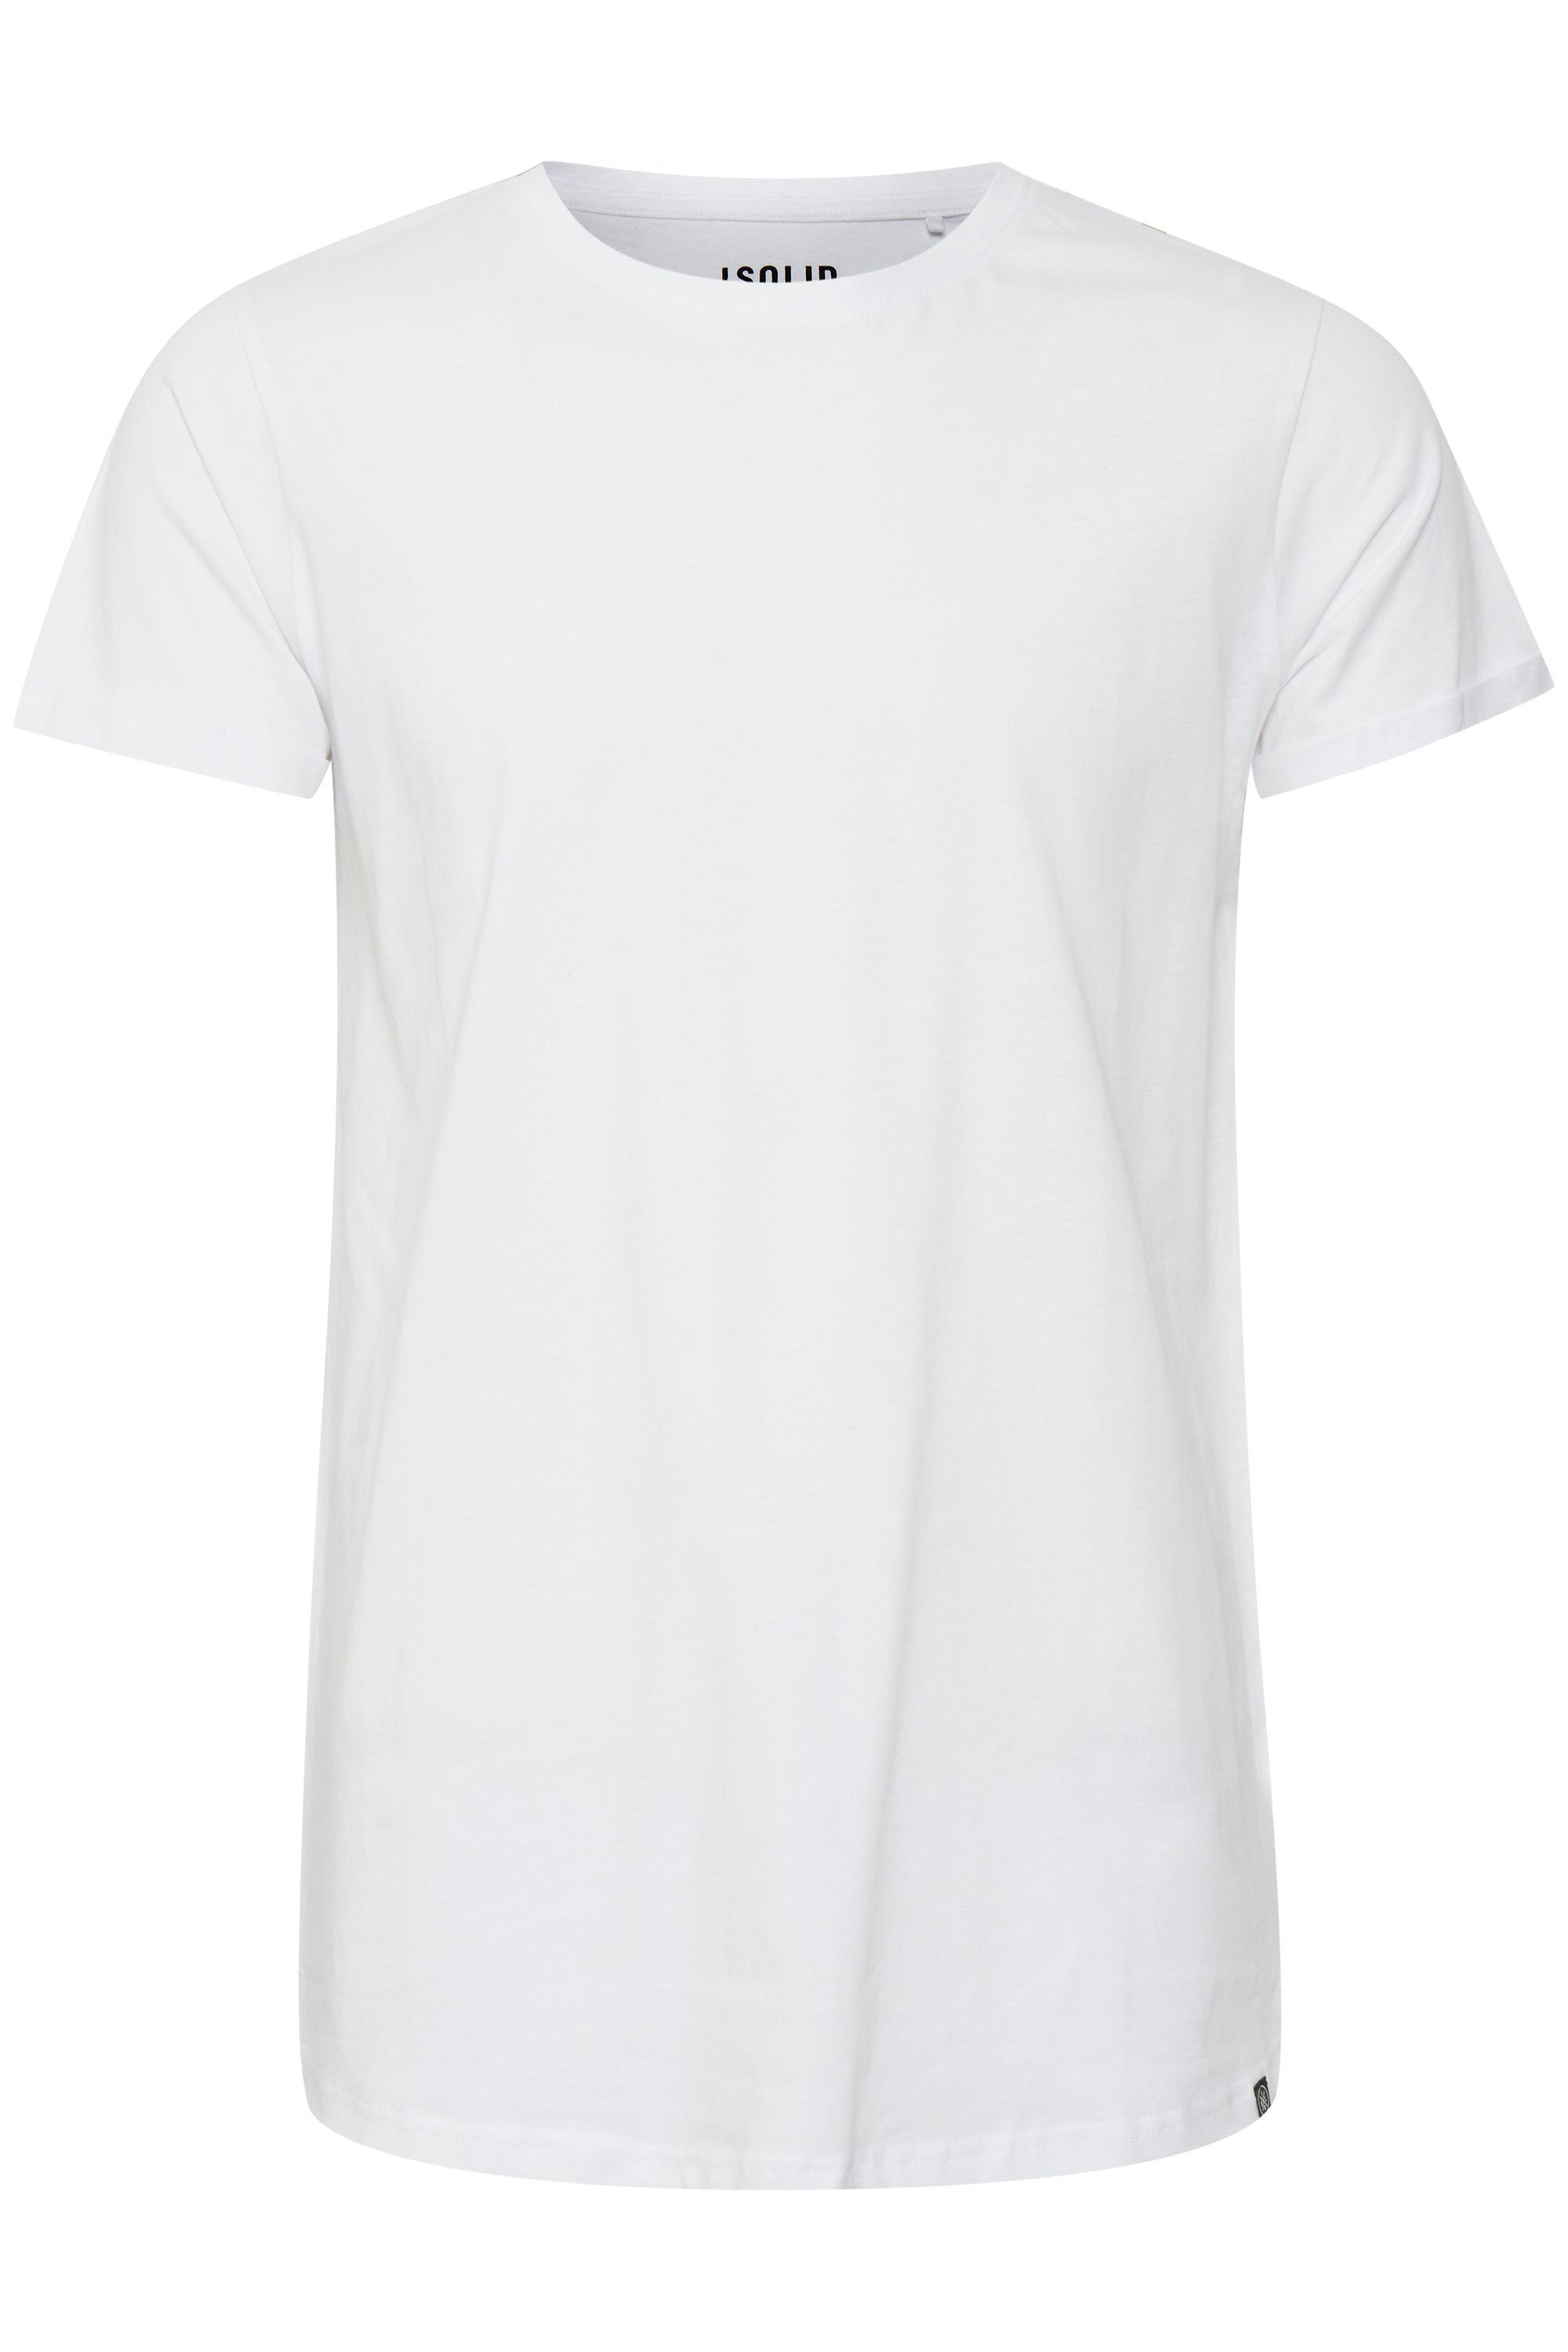 !Solid Longshirt SDLongo T-Shirt White (0001)